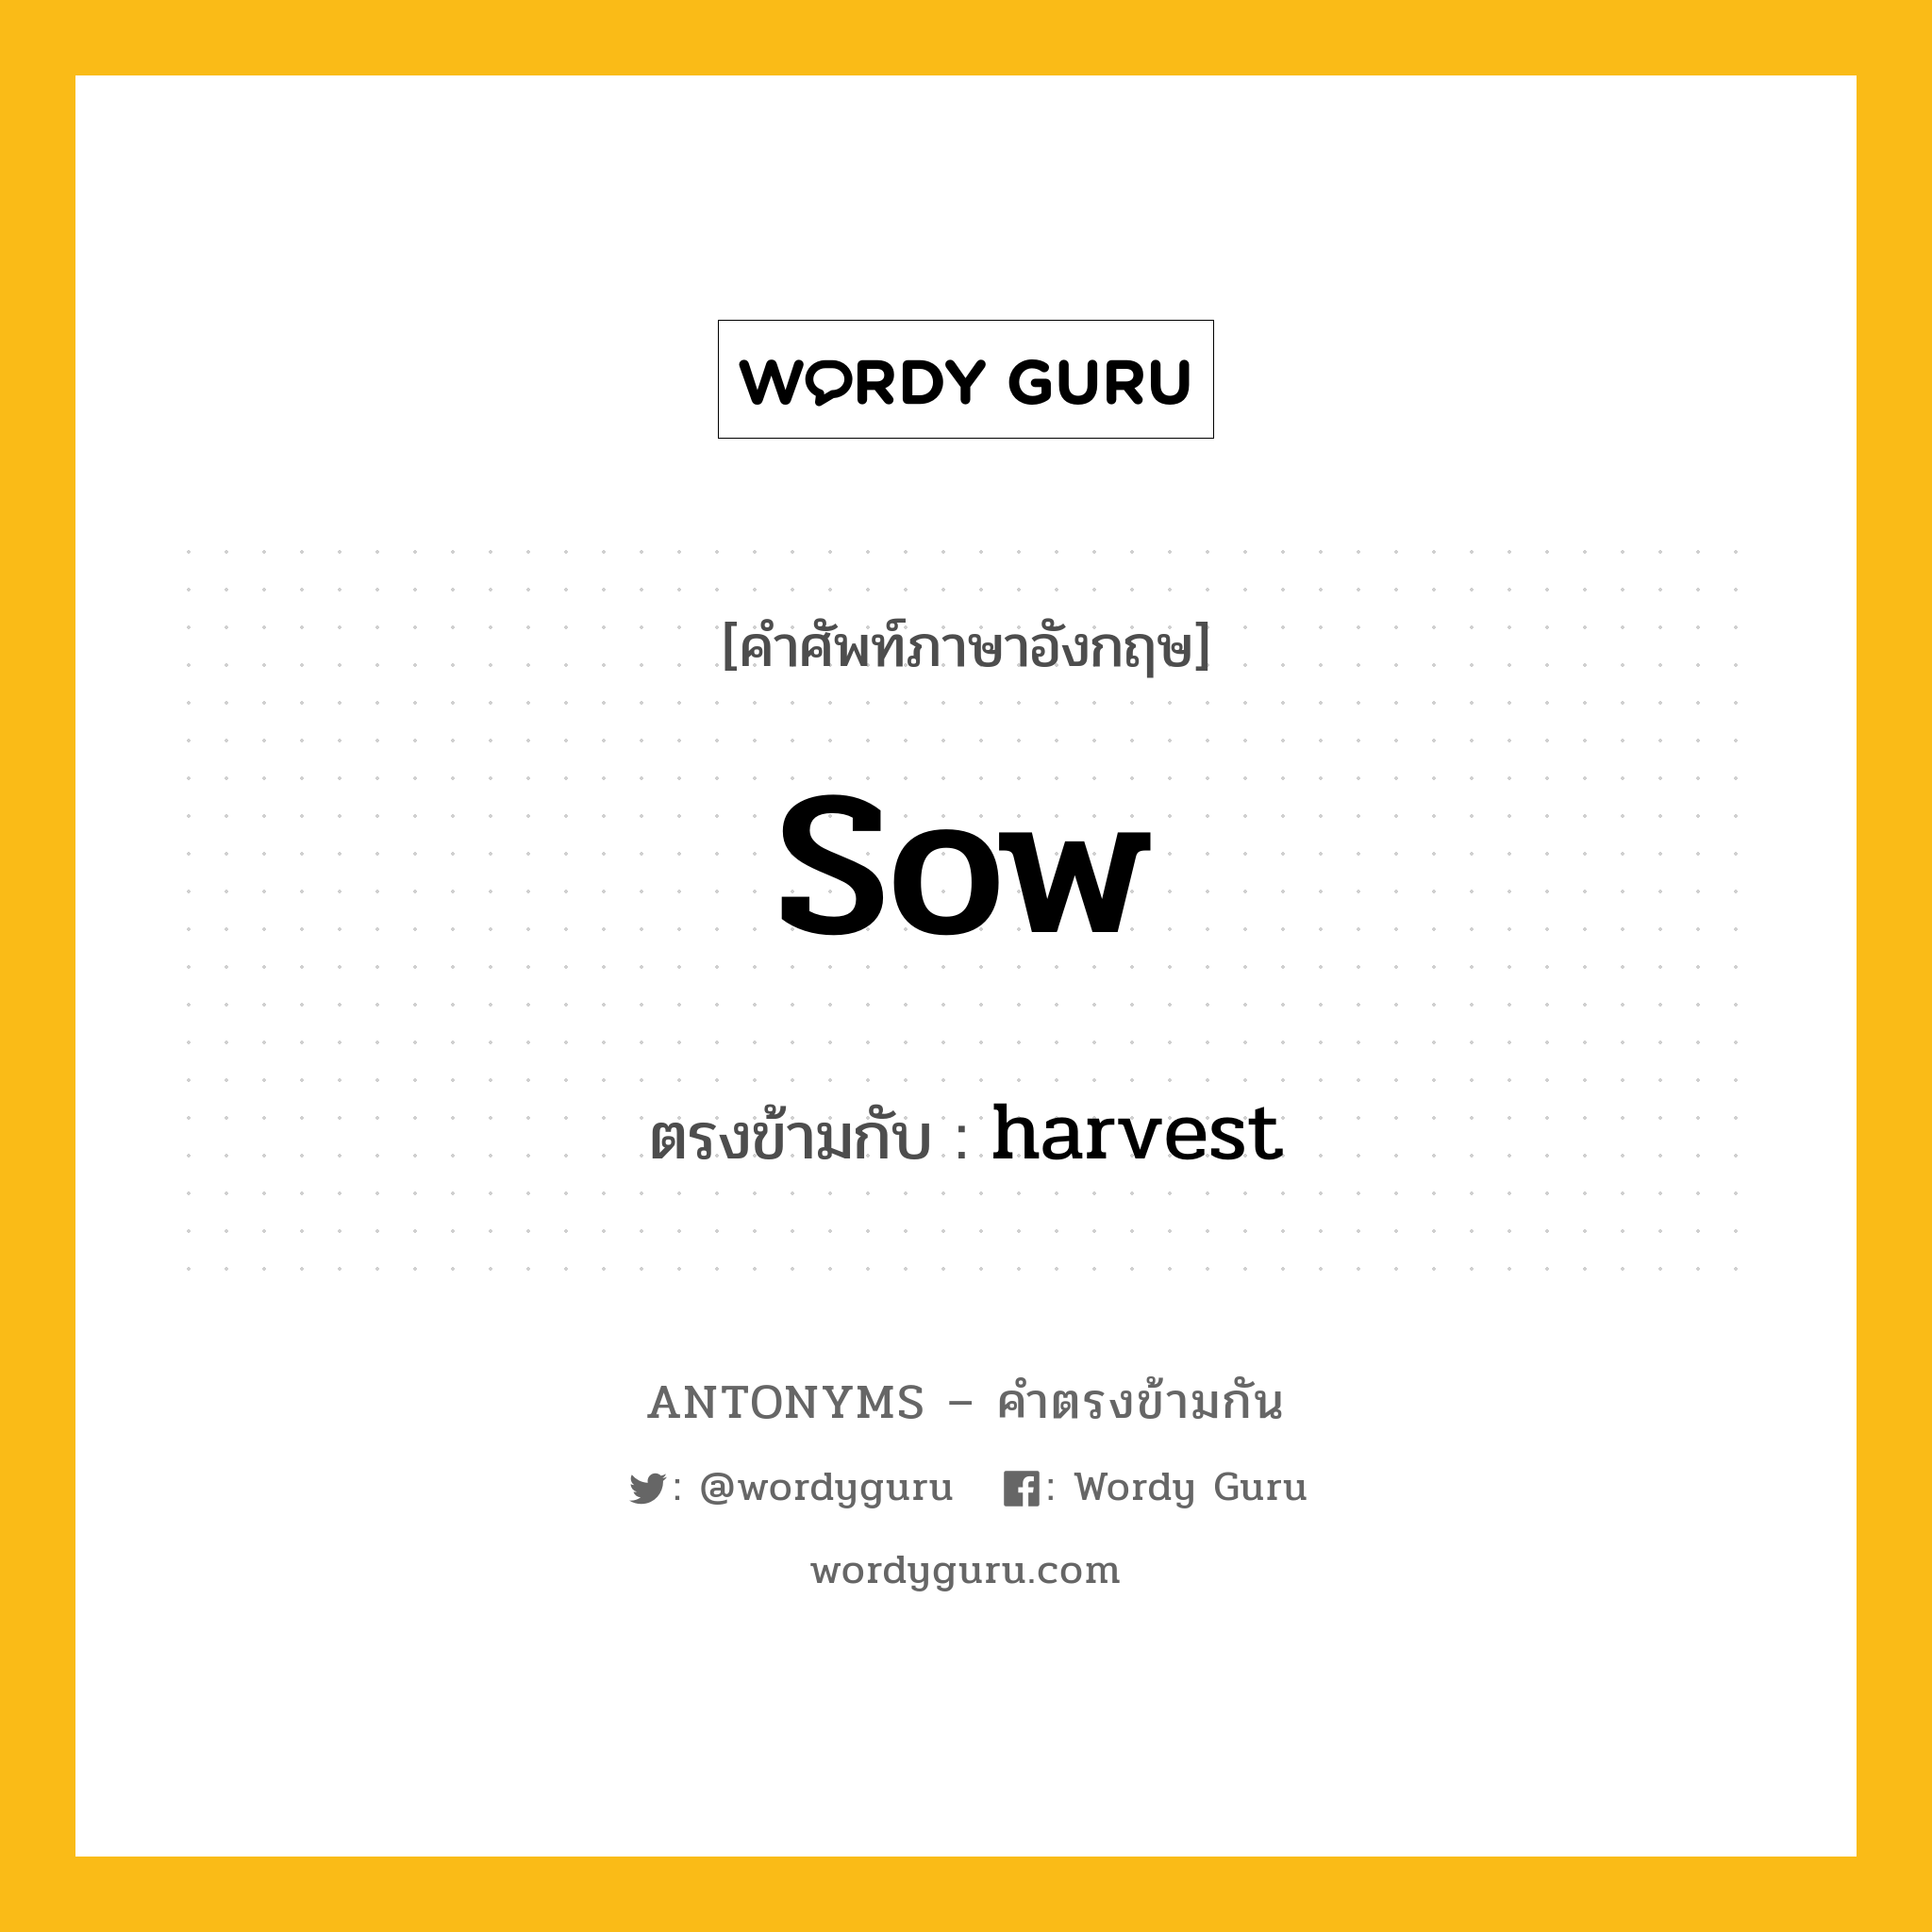 sow เป็นคำตรงข้ามกับคำไหนบ้าง?, คำศัพท์ภาษาอังกฤษ sow ตรงข้ามกับ harvest หมวด harvest